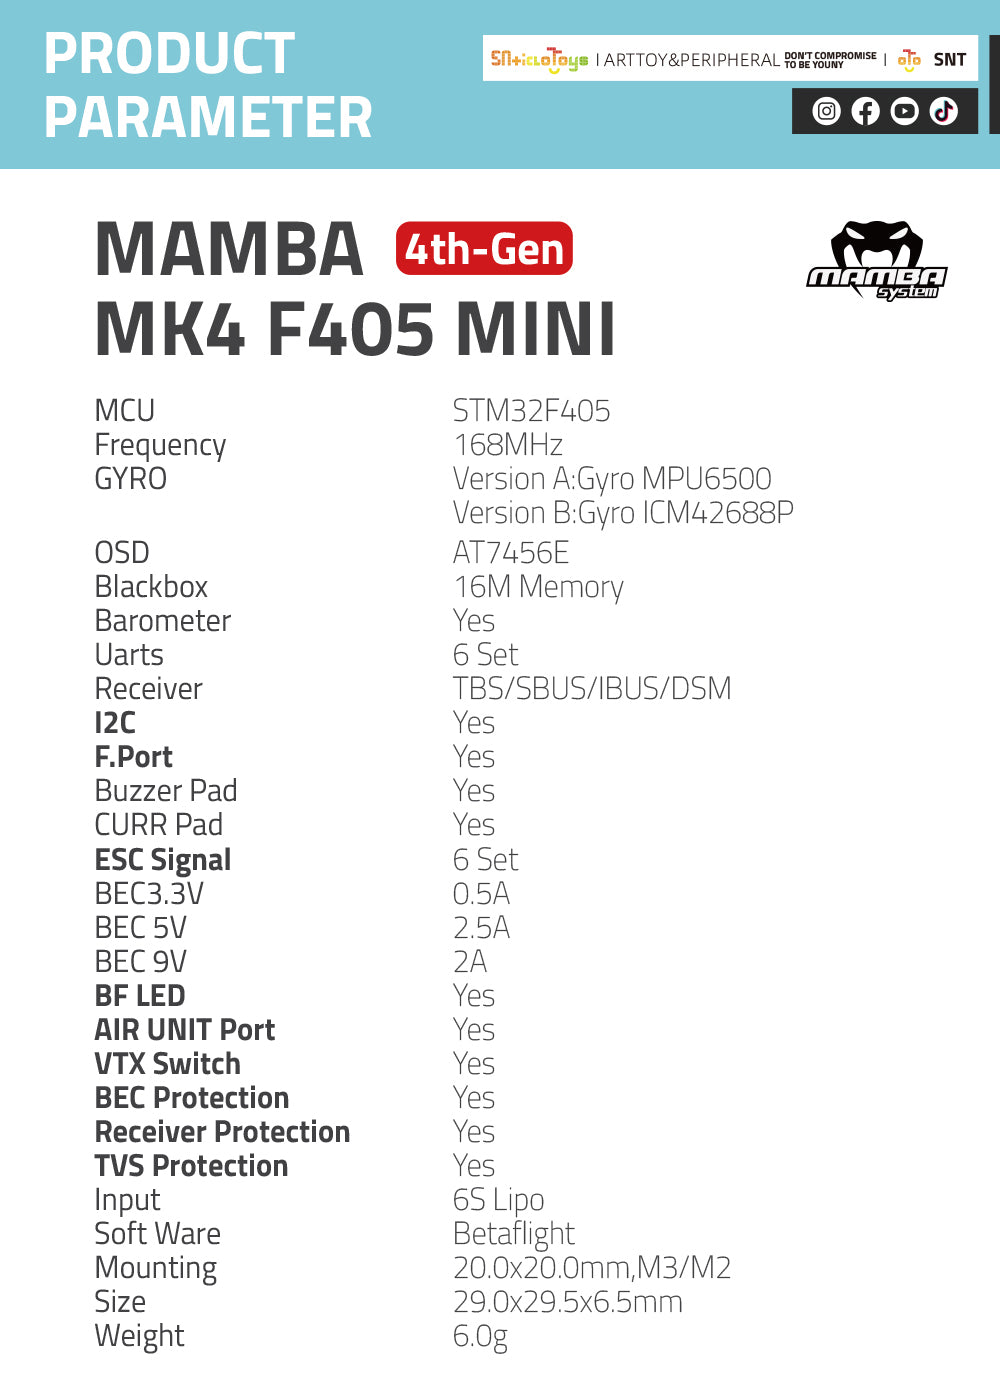 F405 MINI MK4